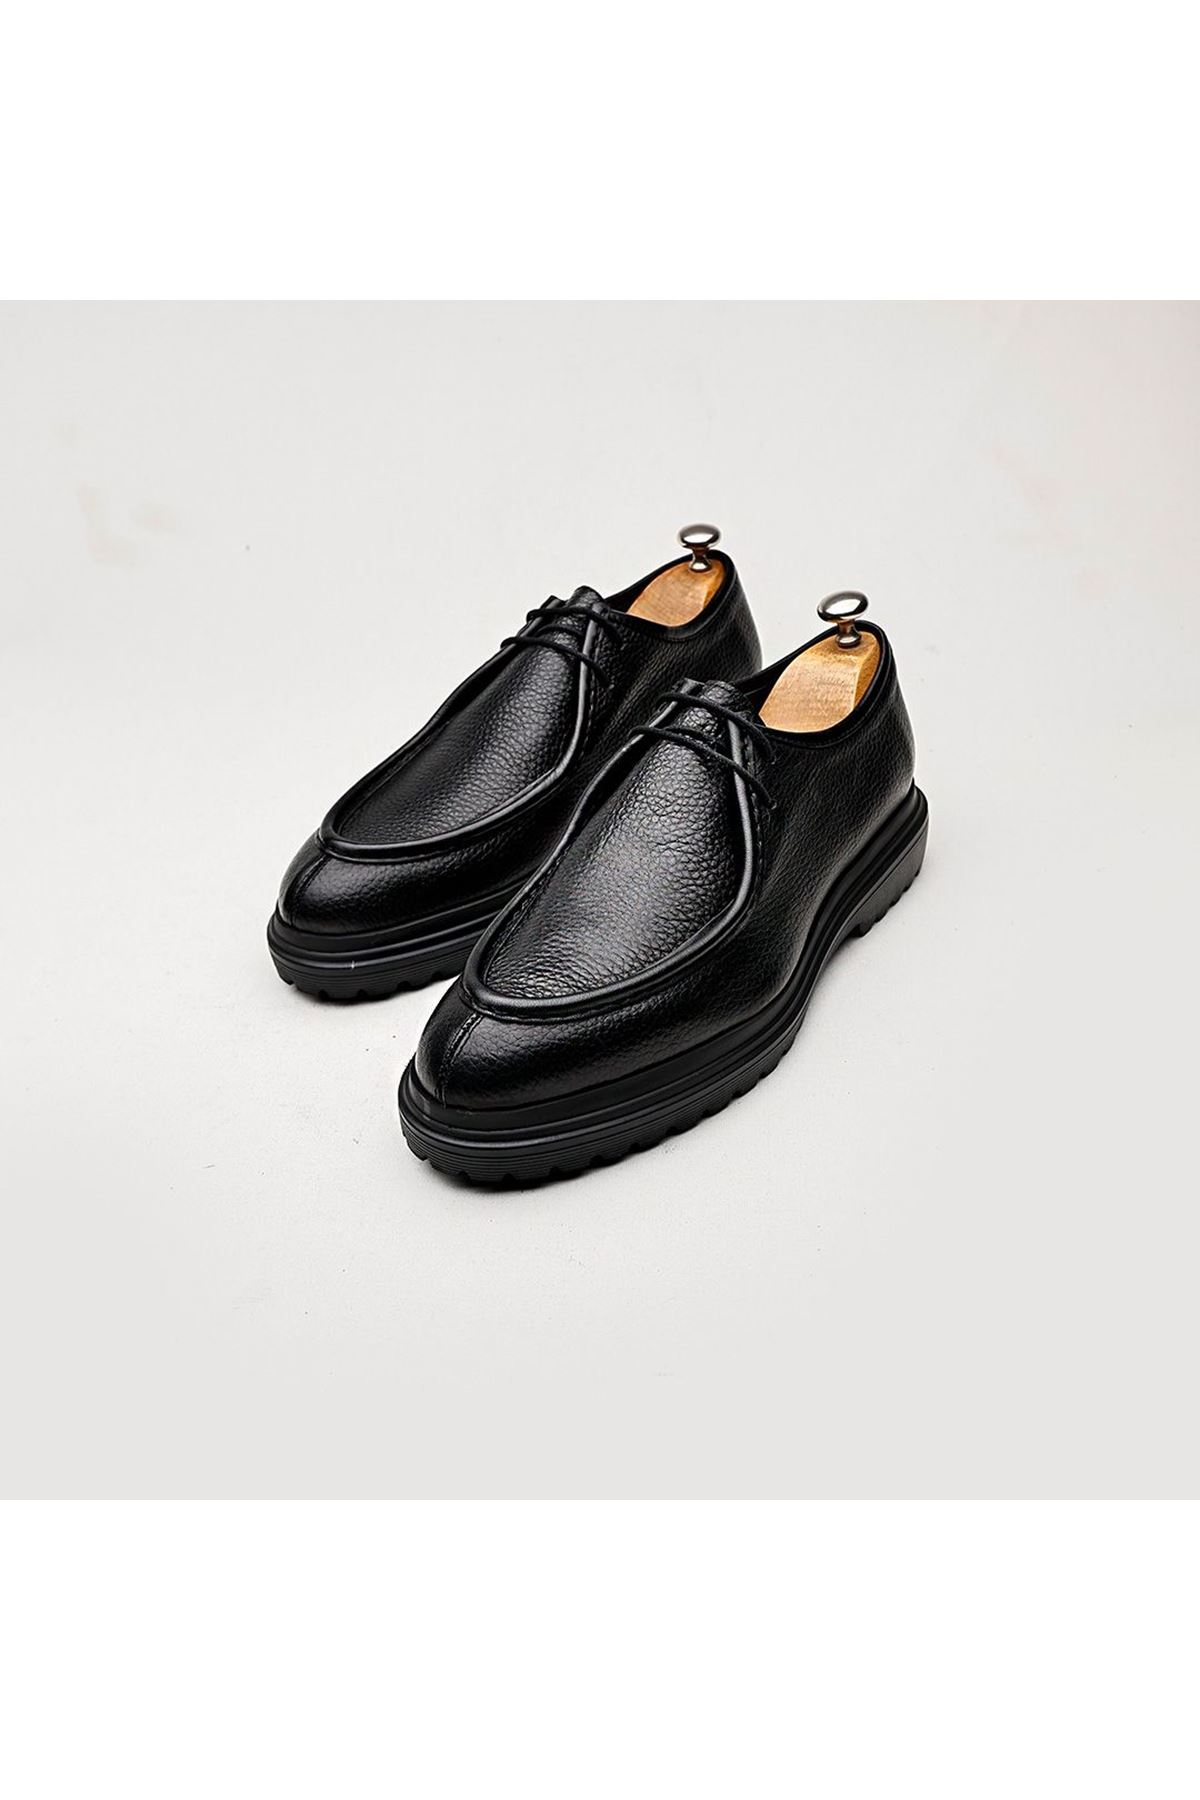 Boy Uzatan Ayakkabı Gizli Topuklu Hakiki Deri Siyah Floter Erkek Klasik Ayakkabı MYY227